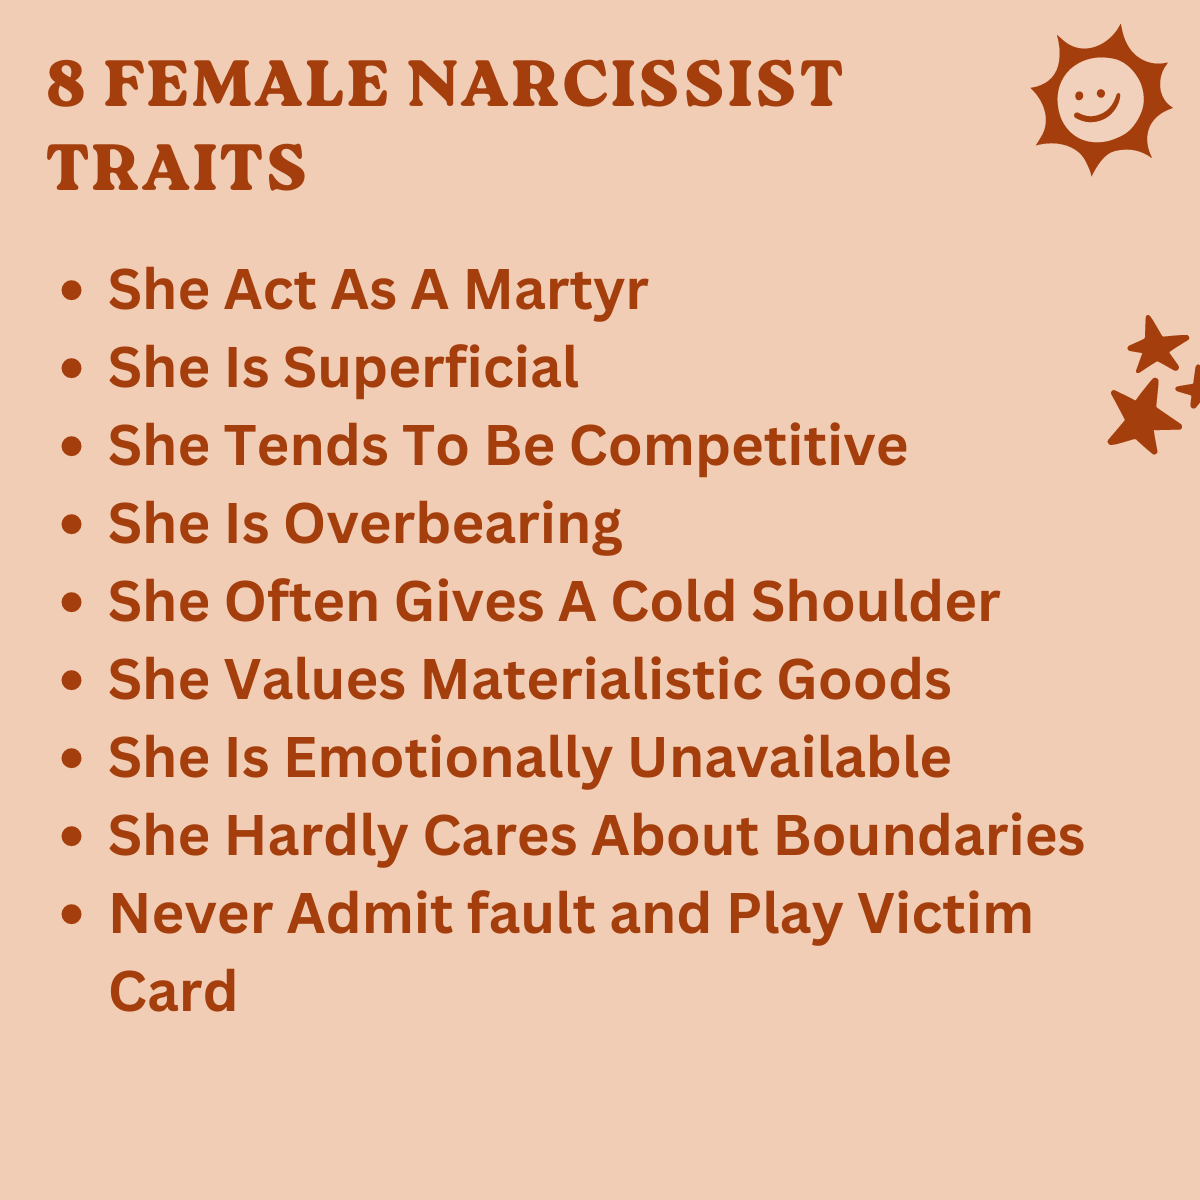 Female Narcissist traits